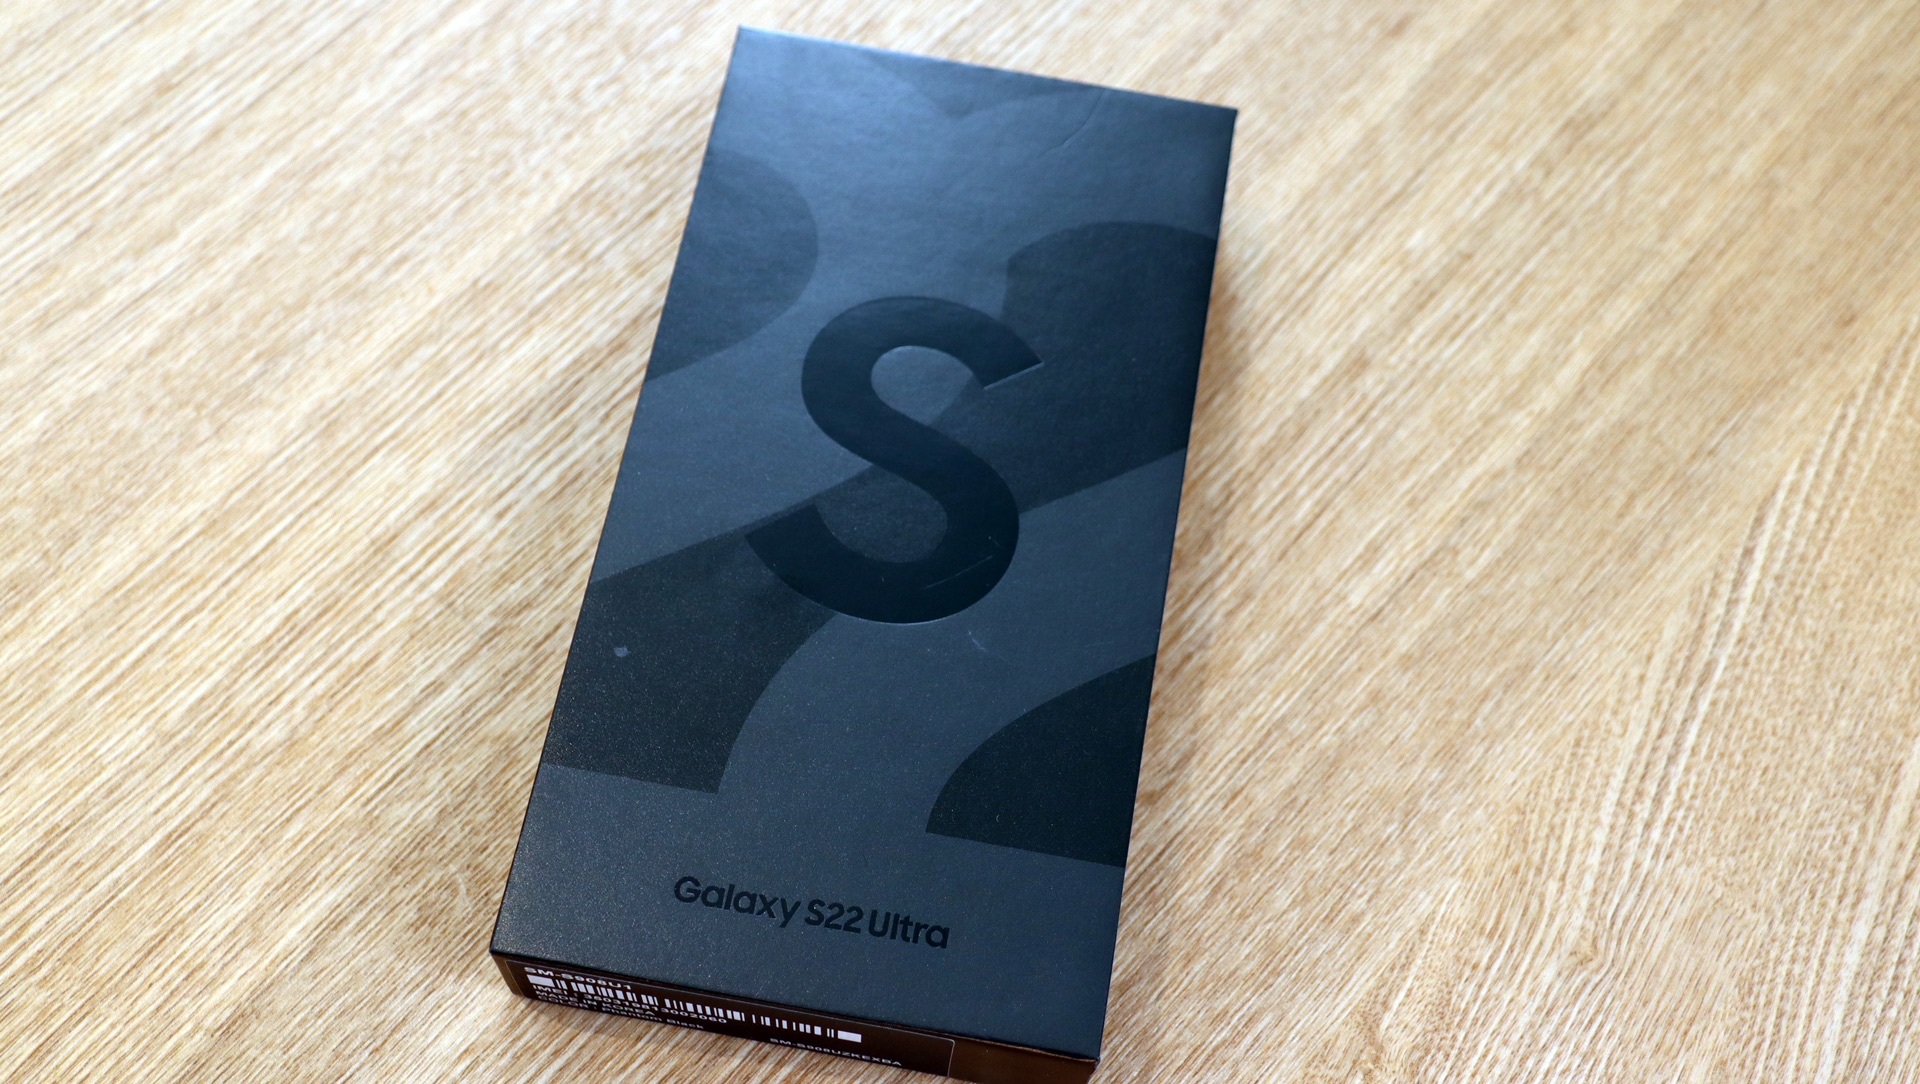 Samsung Galaxy S22 Ultra box